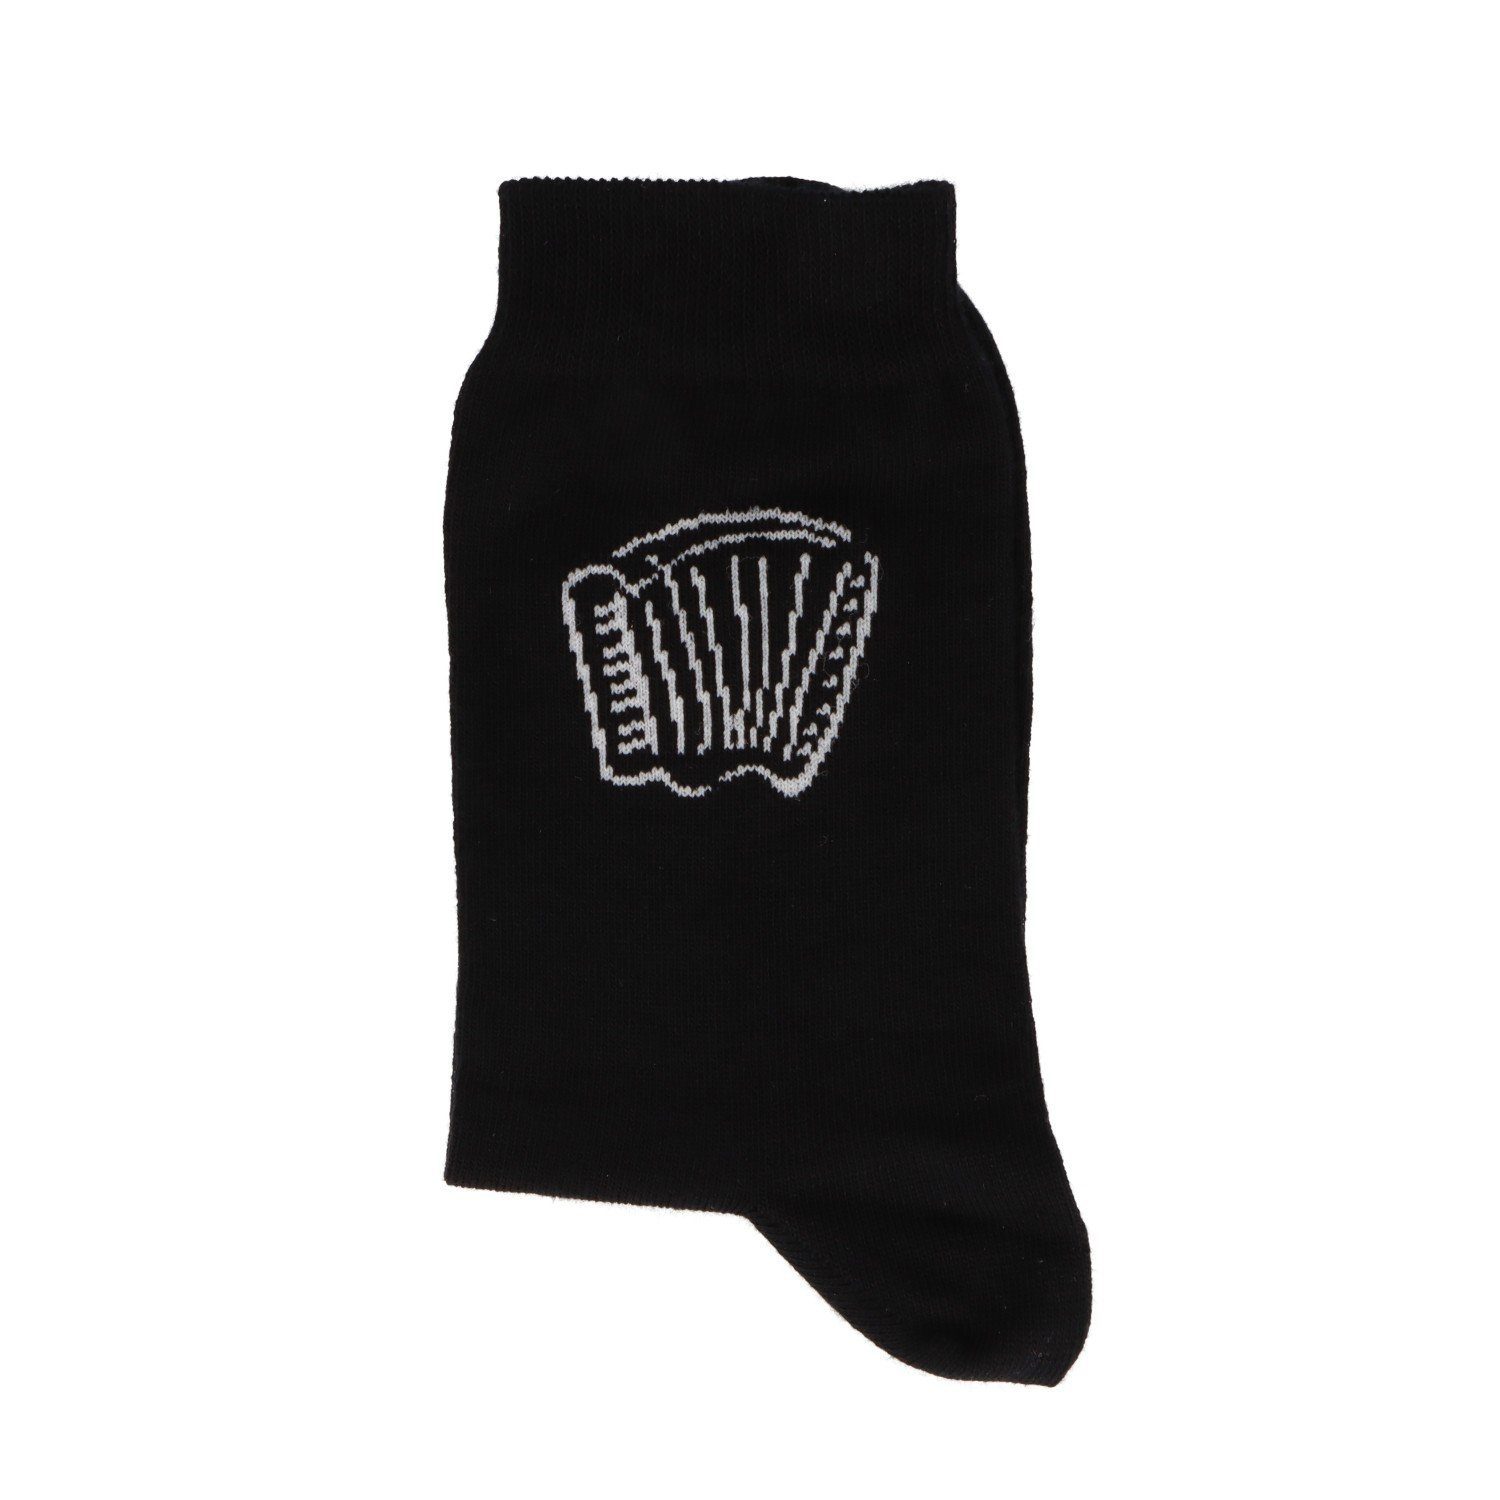 eingewebtem weißen mit Akkordeon Musikboutique schwarze Socken Freizeitsocken (1-Paar)